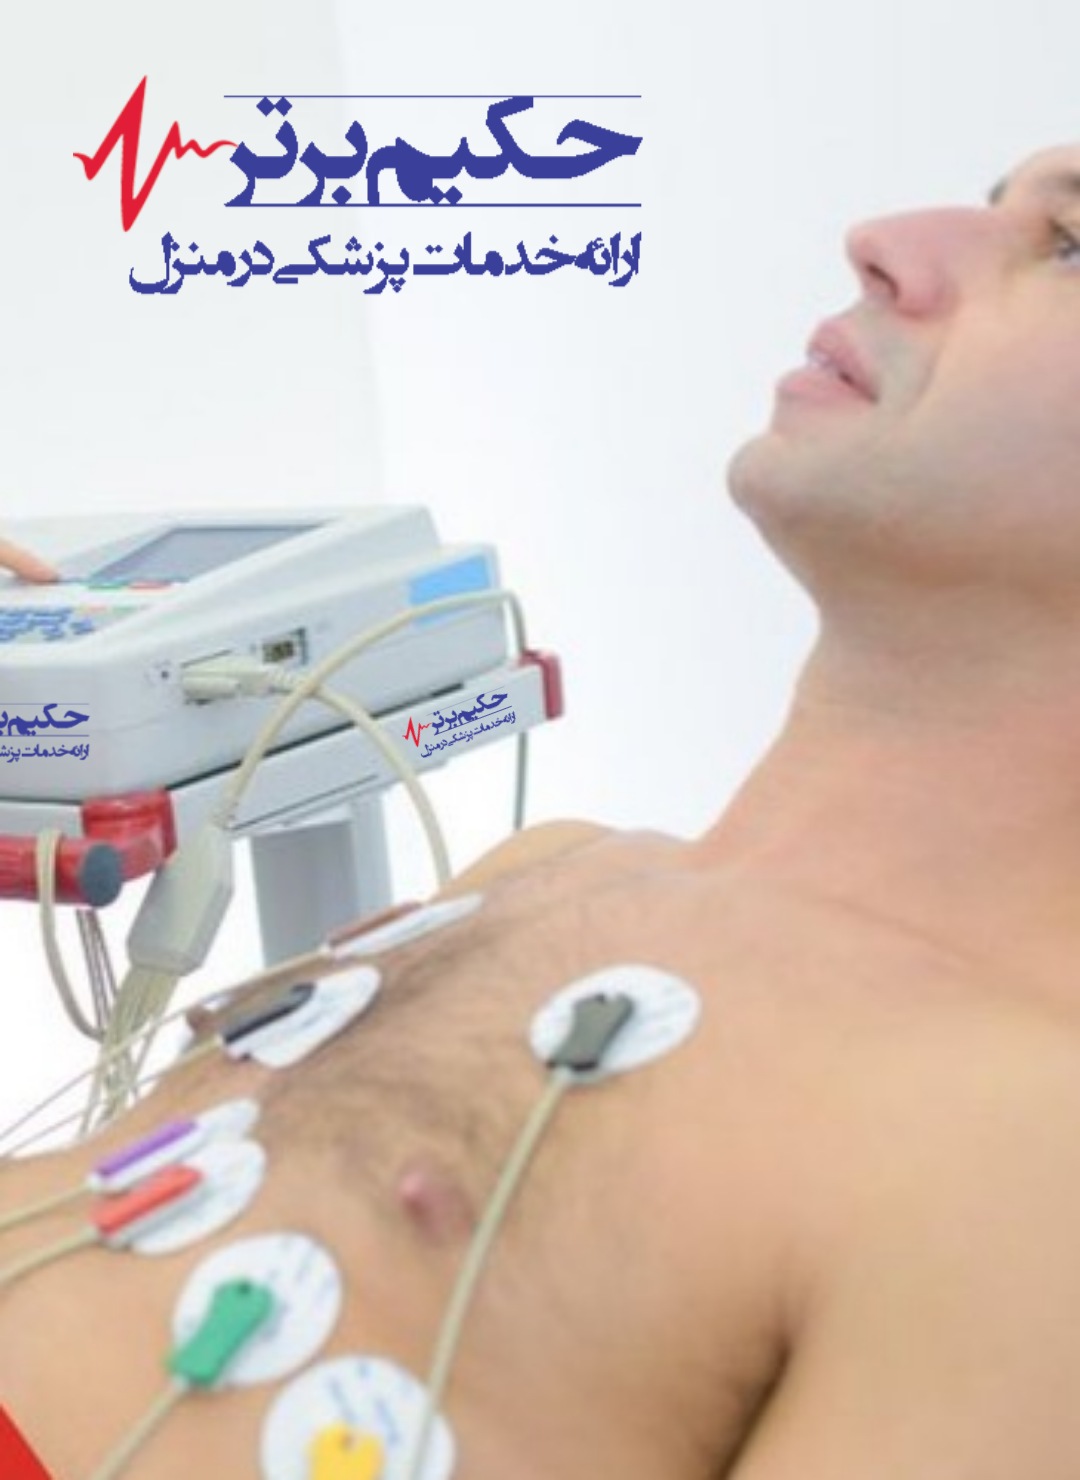 اکوی قلب یا اکوکاردیوگرام در منزل با جدیدترین دستگاه  پرتابل در همه مناطق تهران